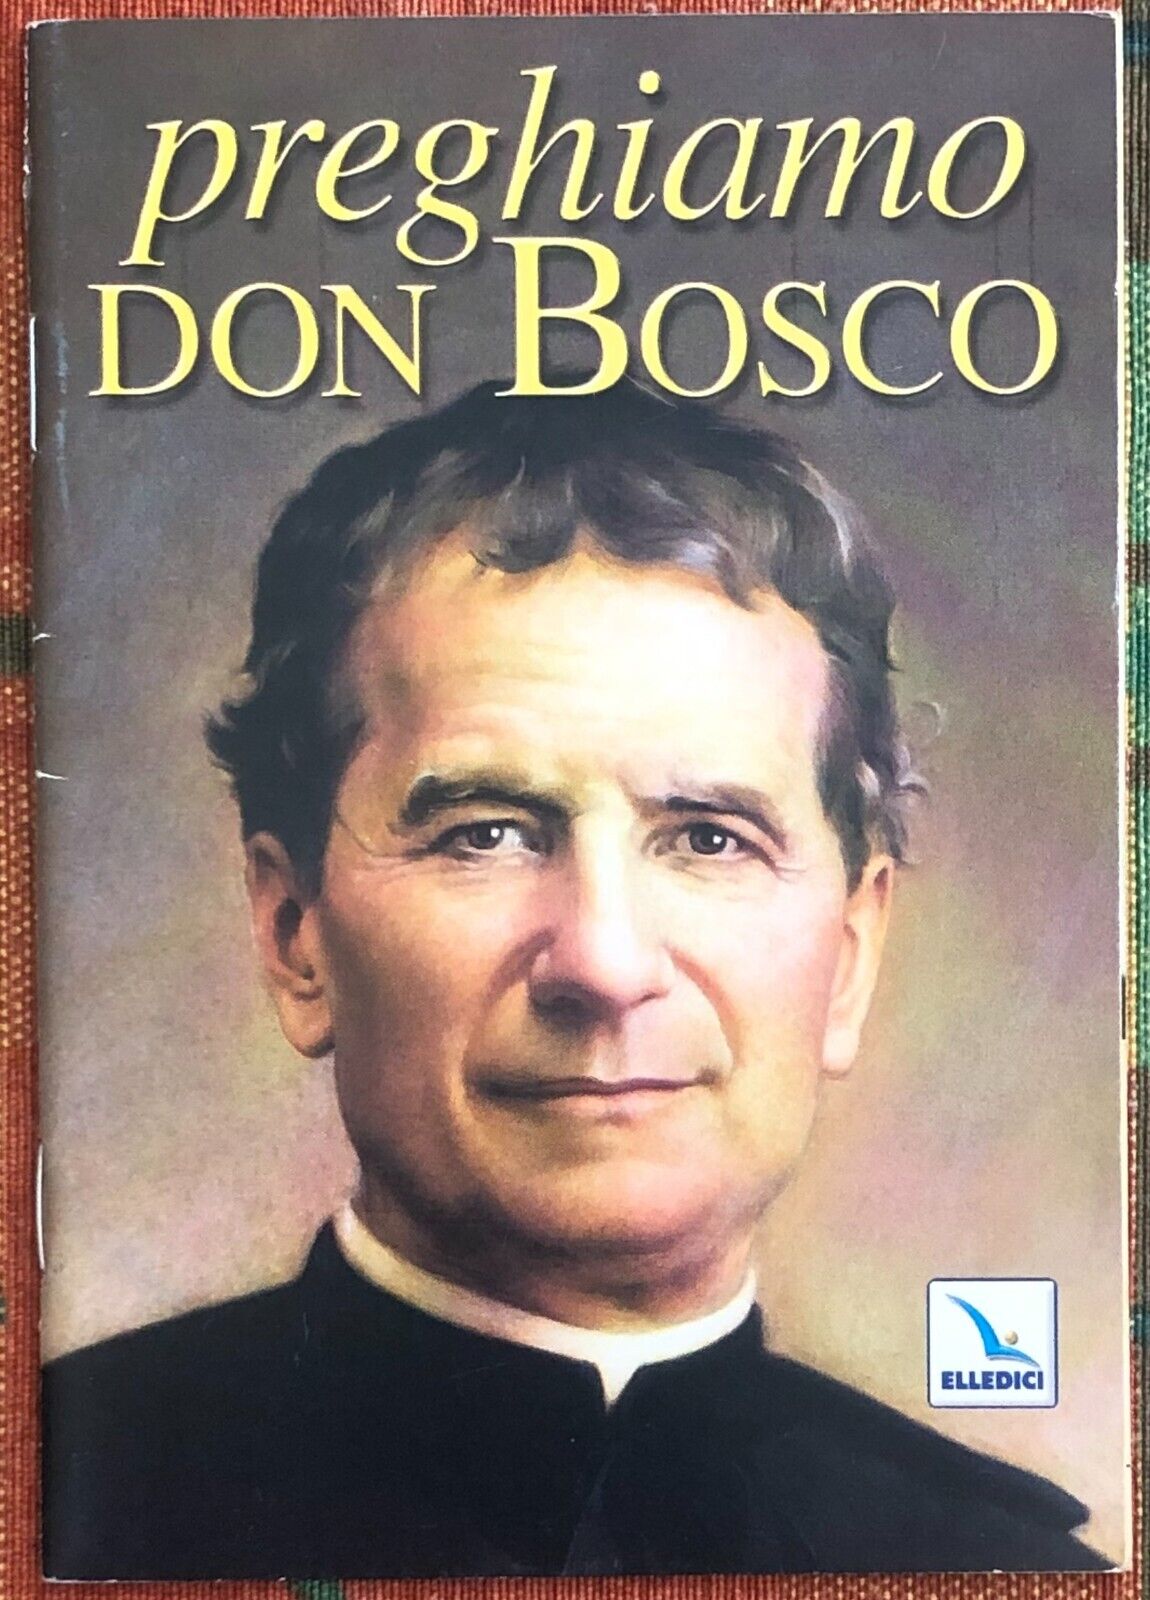 Preghiamo don Bosco di Aa.vv., 2008, Elledici